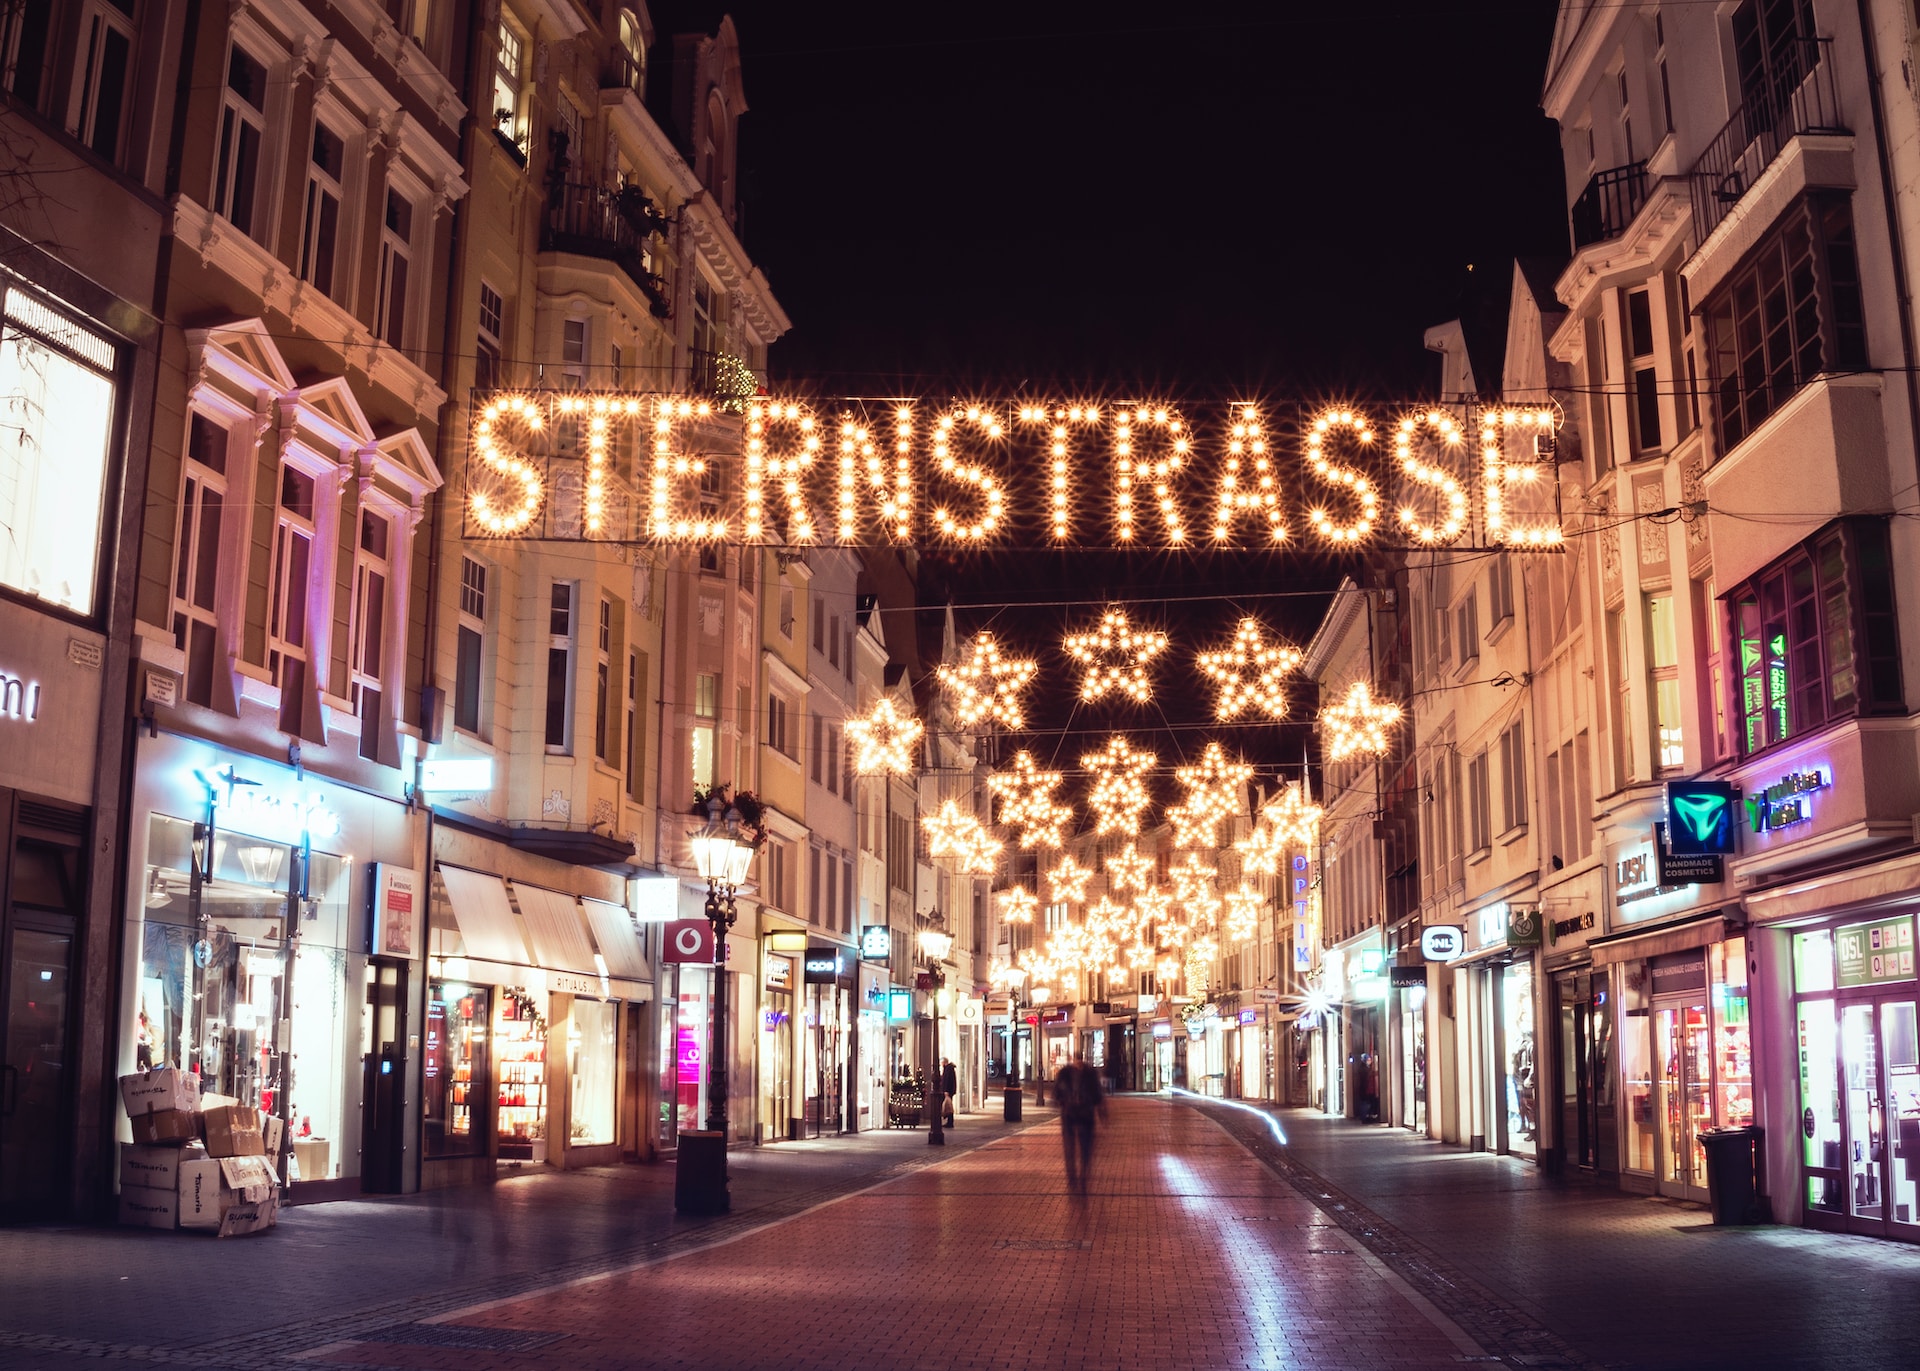 Weihnachtsmarkt in Bonn: Vorweihnachtliche Magie und Festliche Atmosphäre